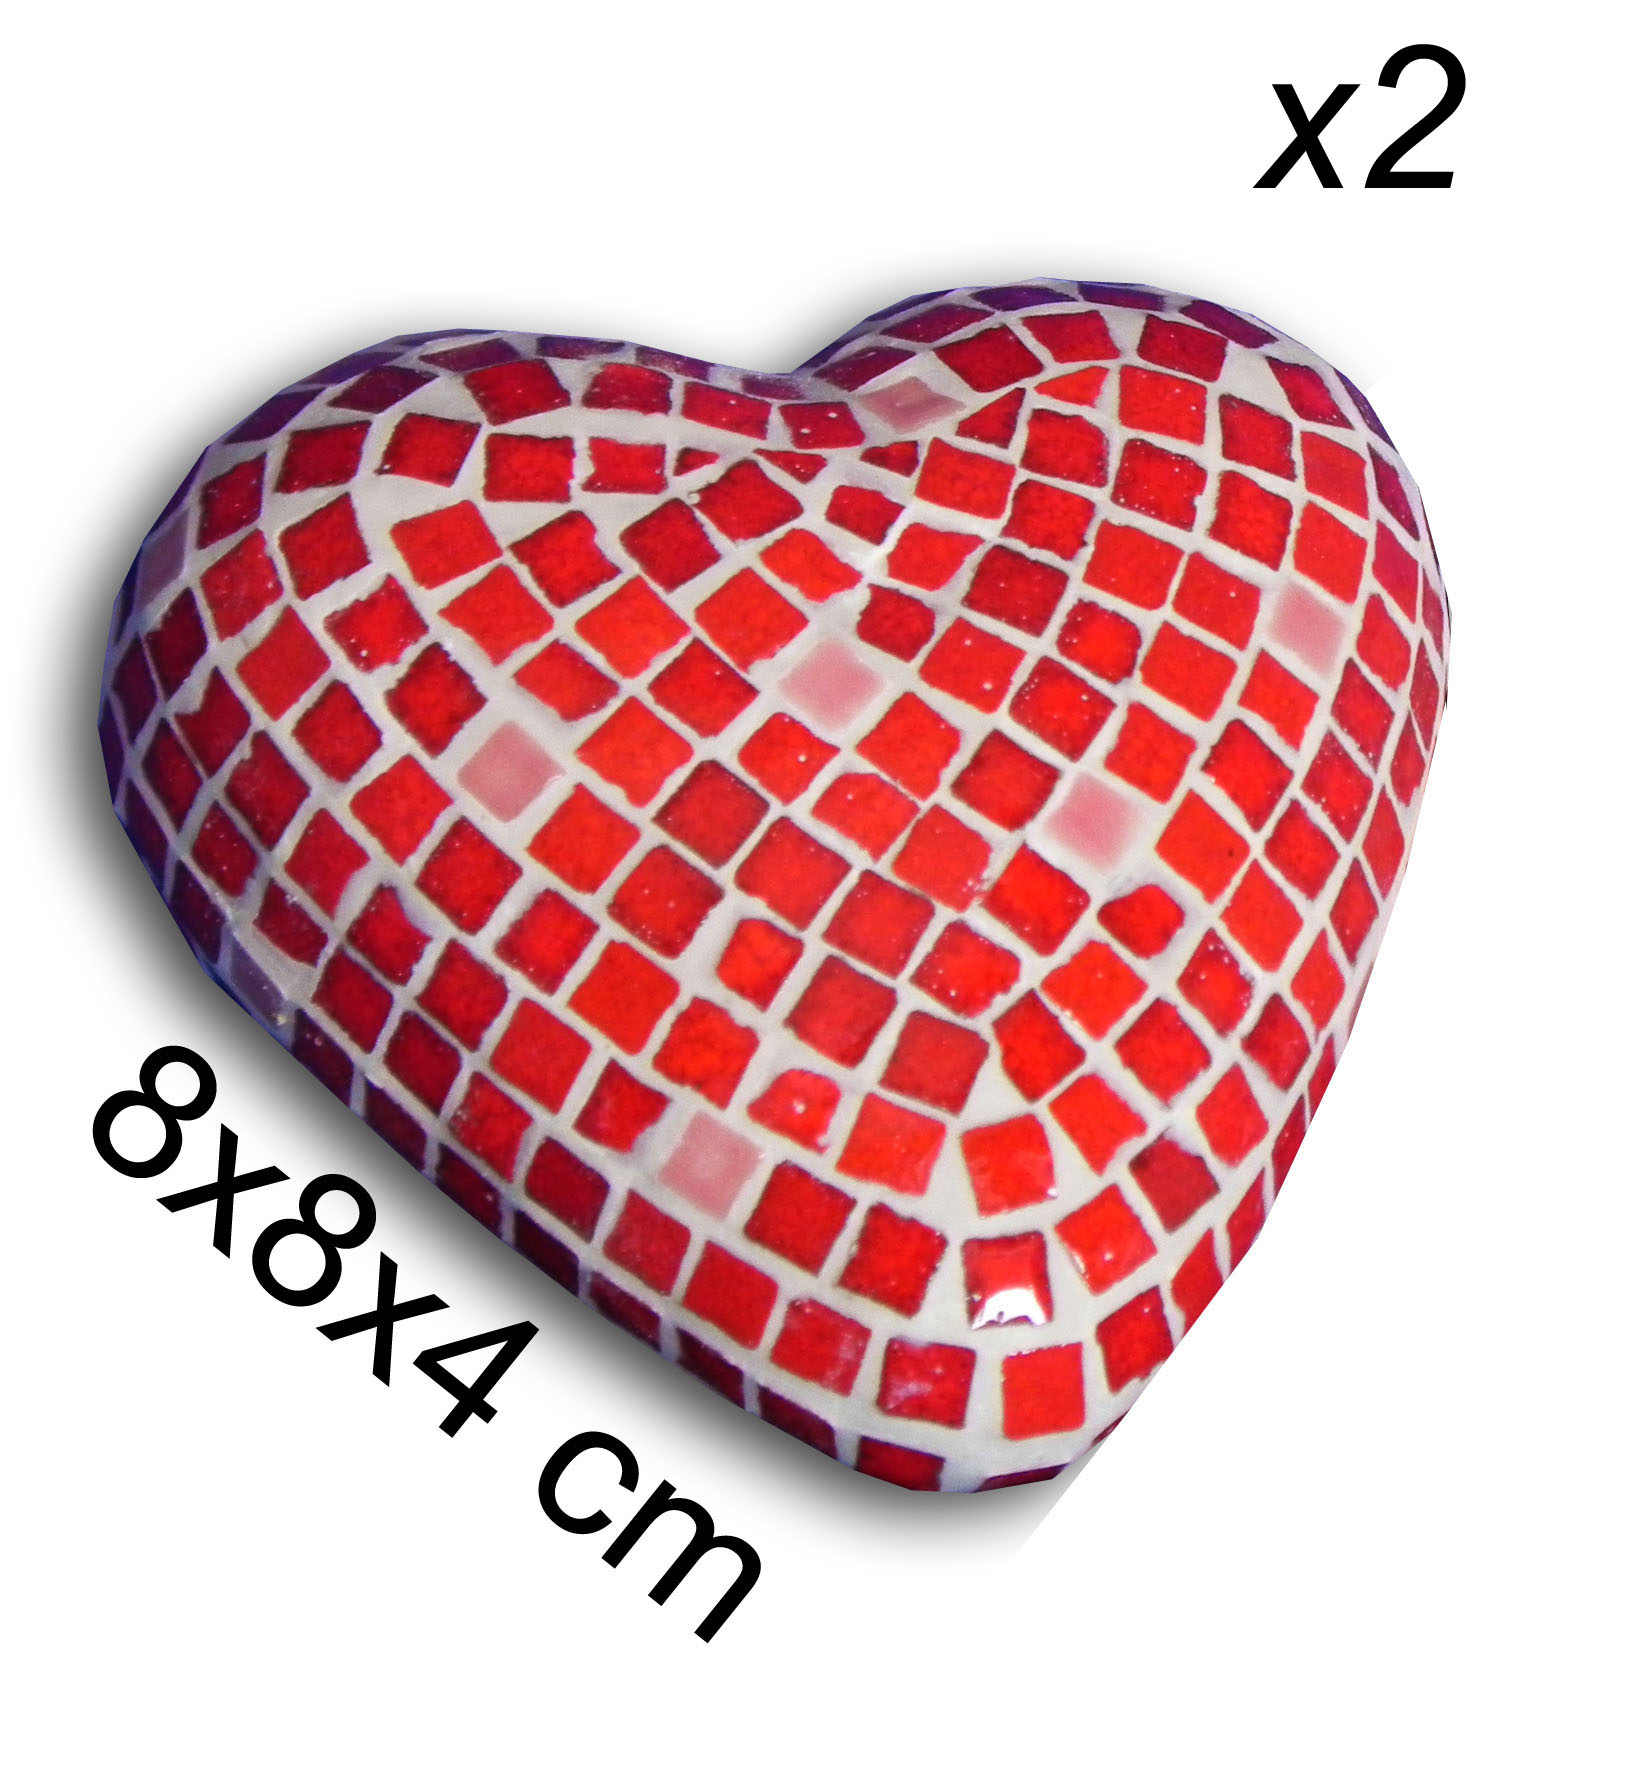 Heart 8x8x4 cm  x 2